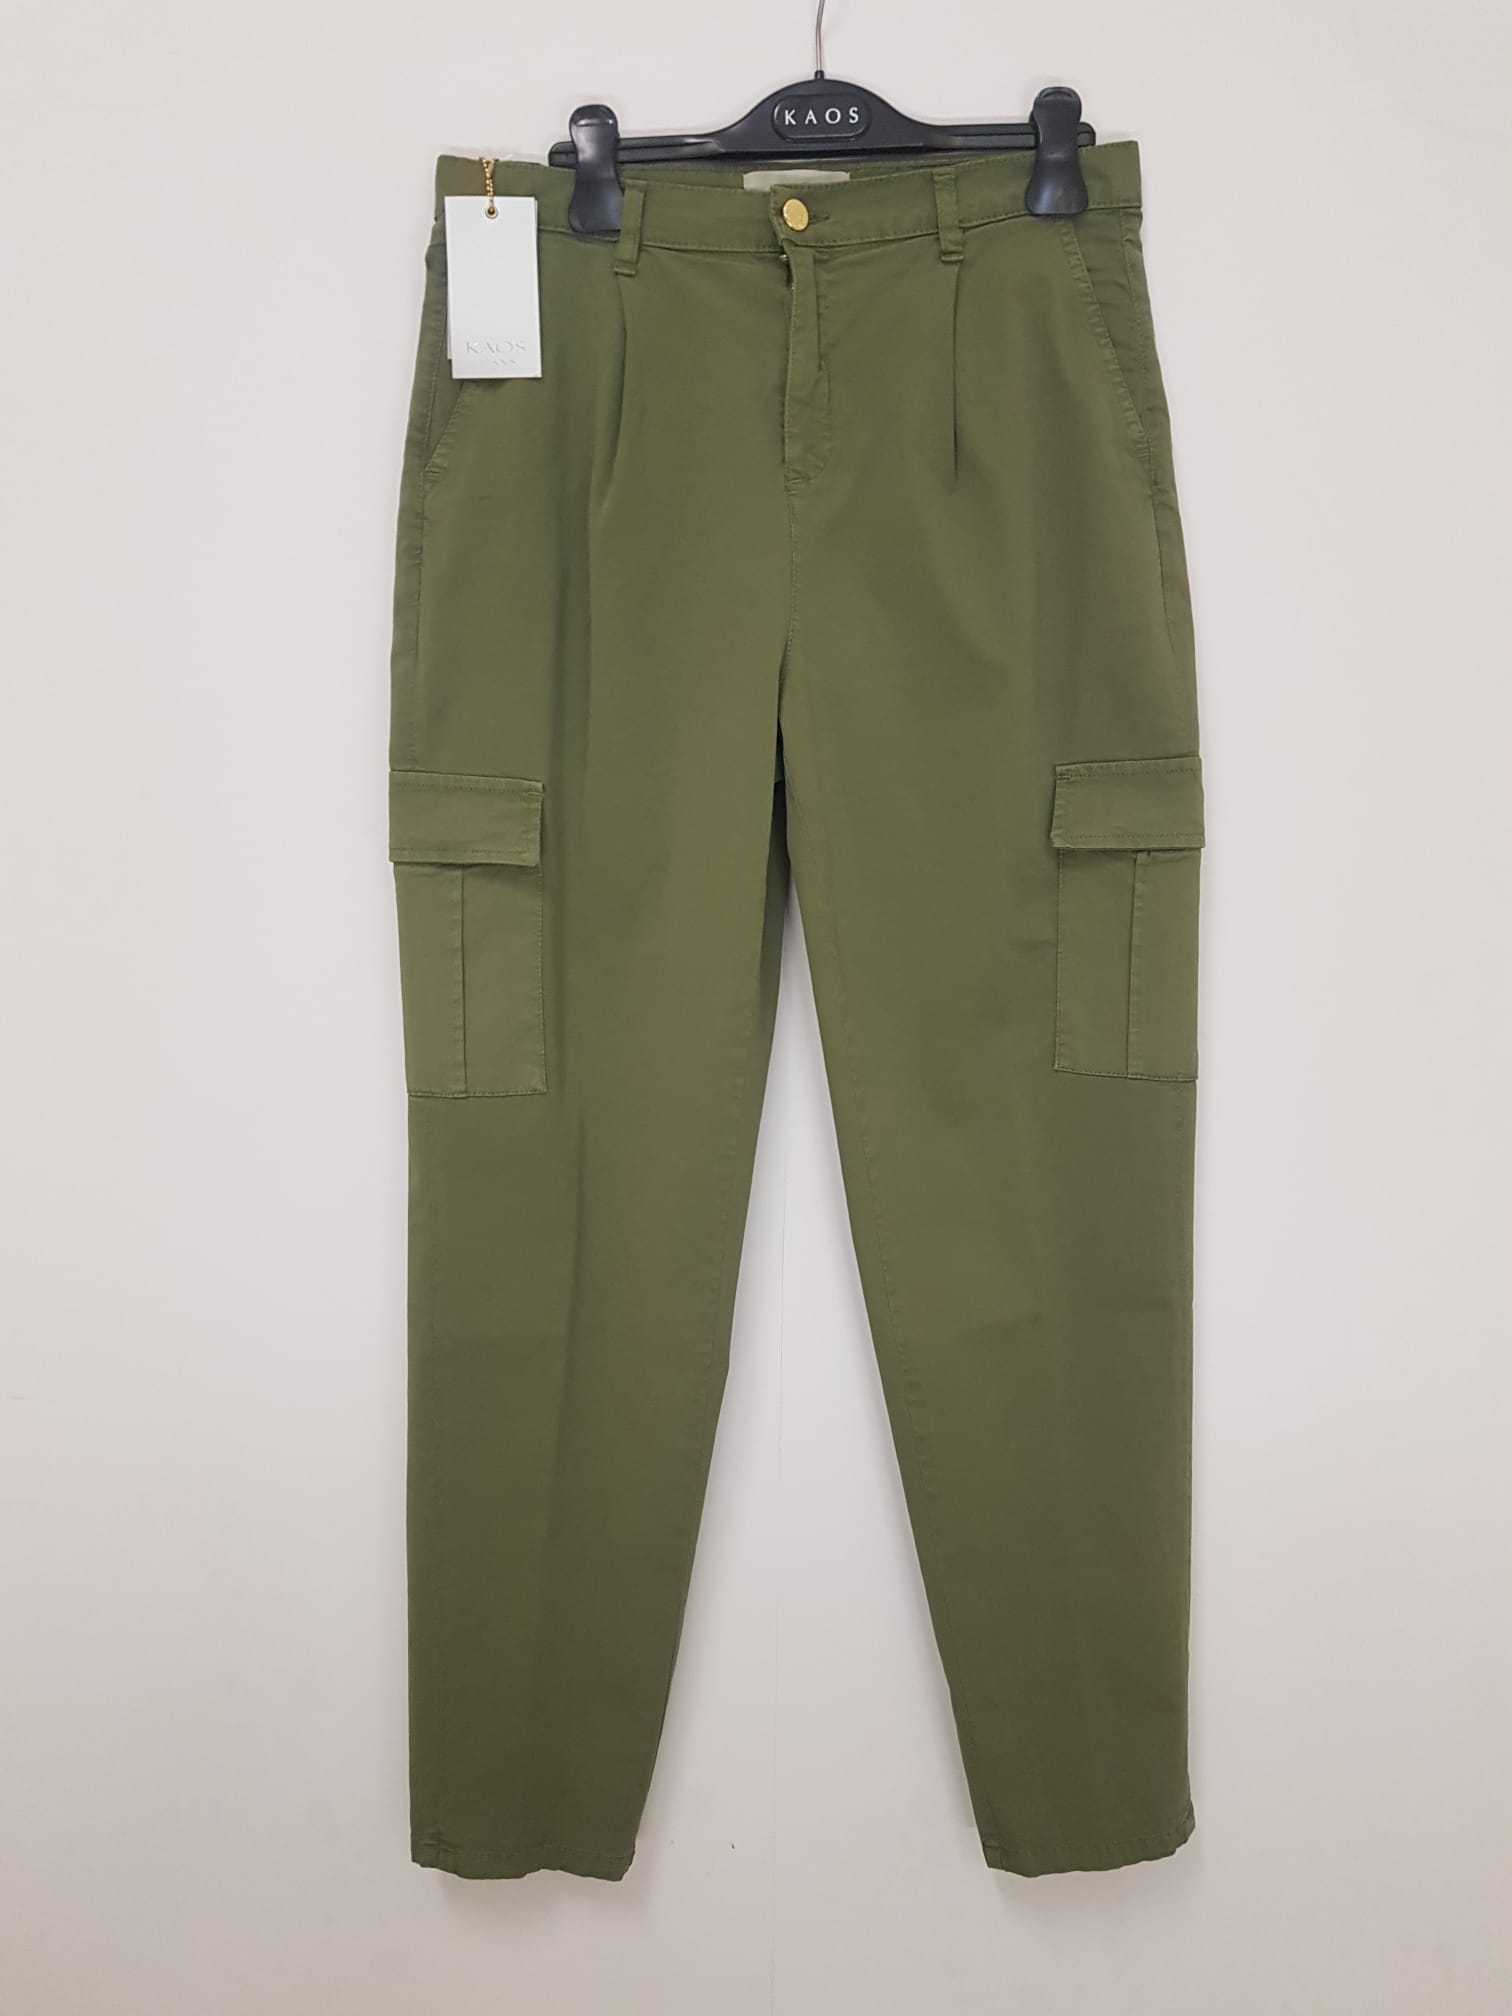 Pantalone Kaos Jeans Tasconi Militare